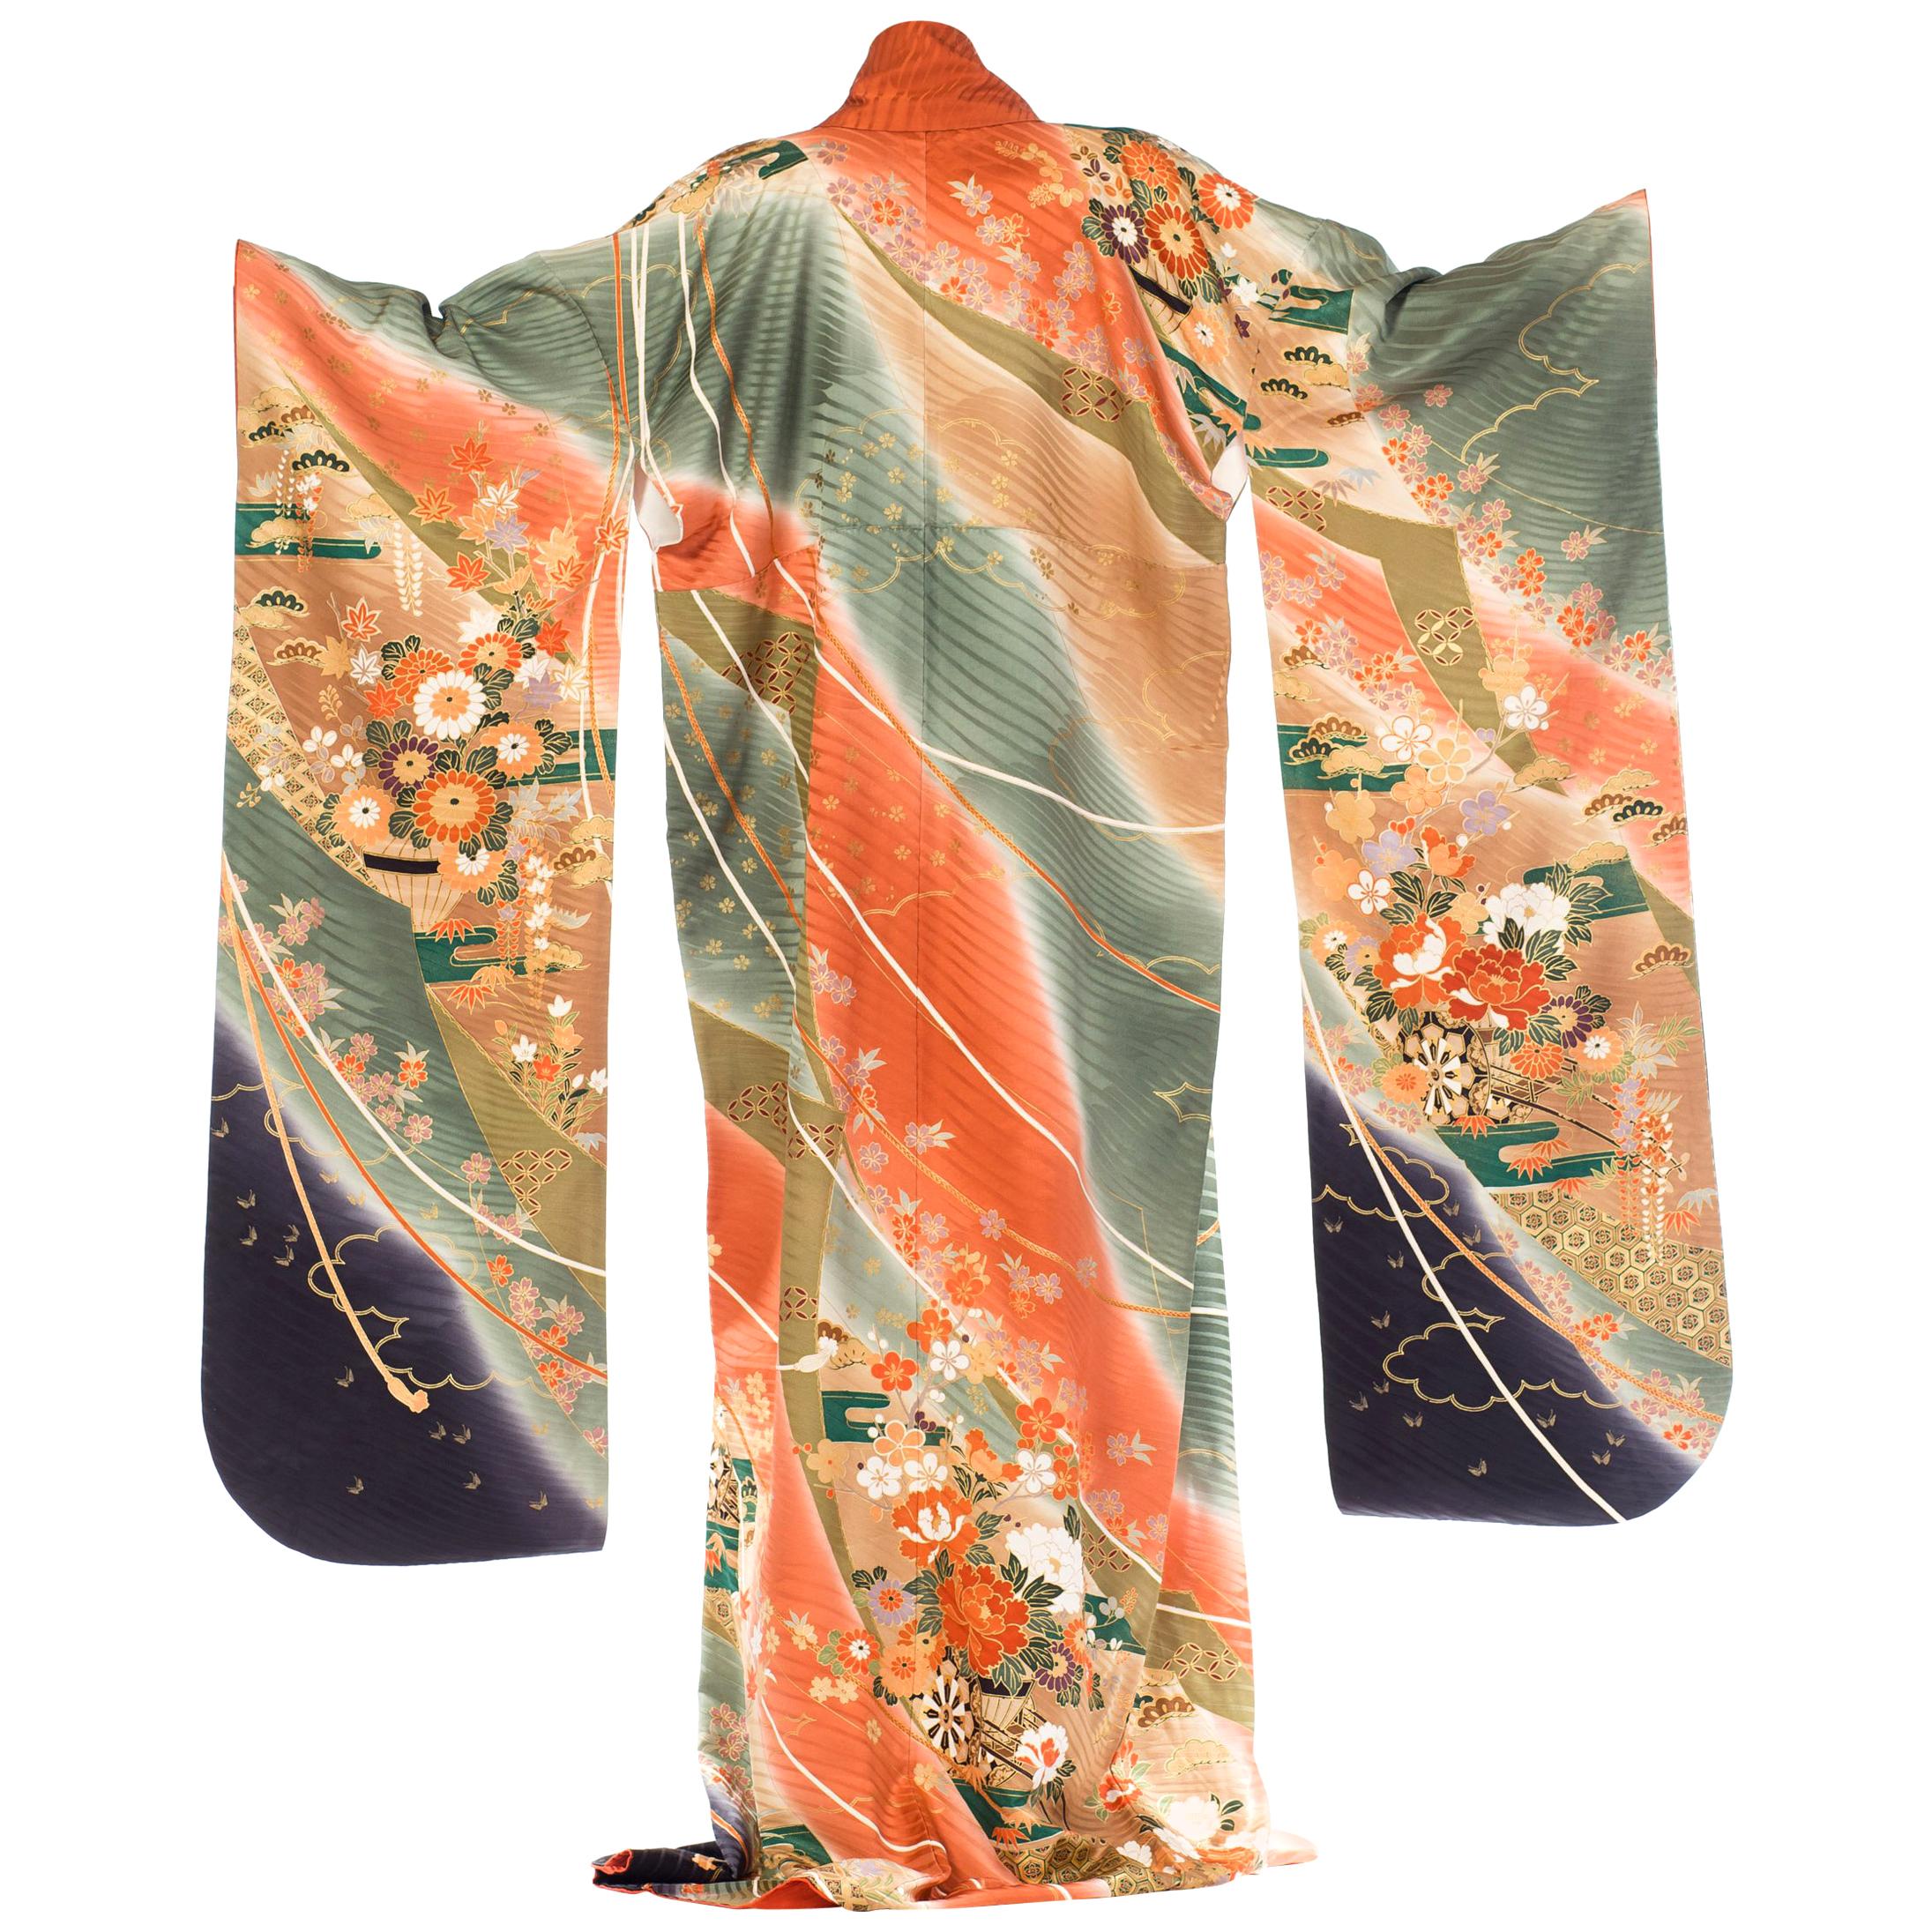 Kimono japonais en soie florale multicolore des années 1970 avec détails ombrés et dorés